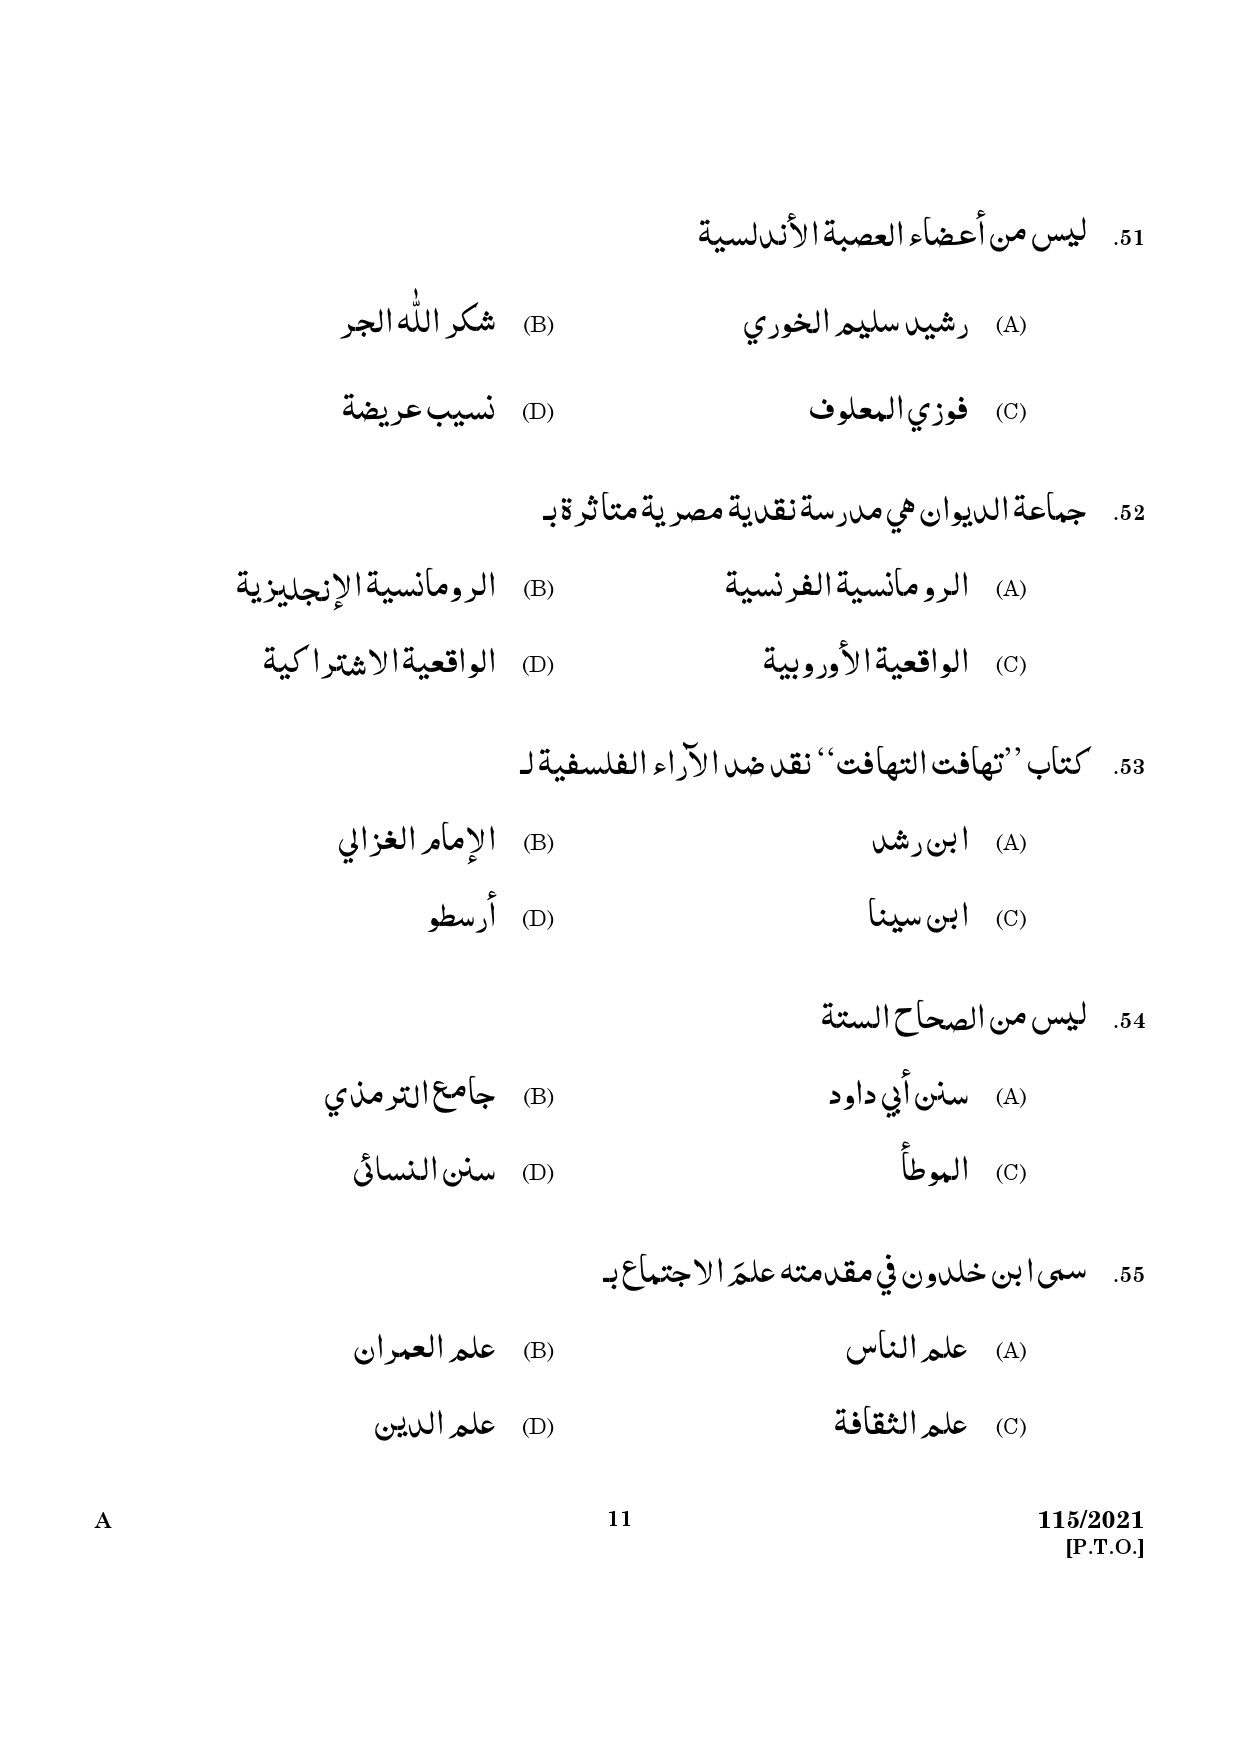 KPSC Part Time Junior Language Teacher Arabic Exam 2021 Code 1152021 9